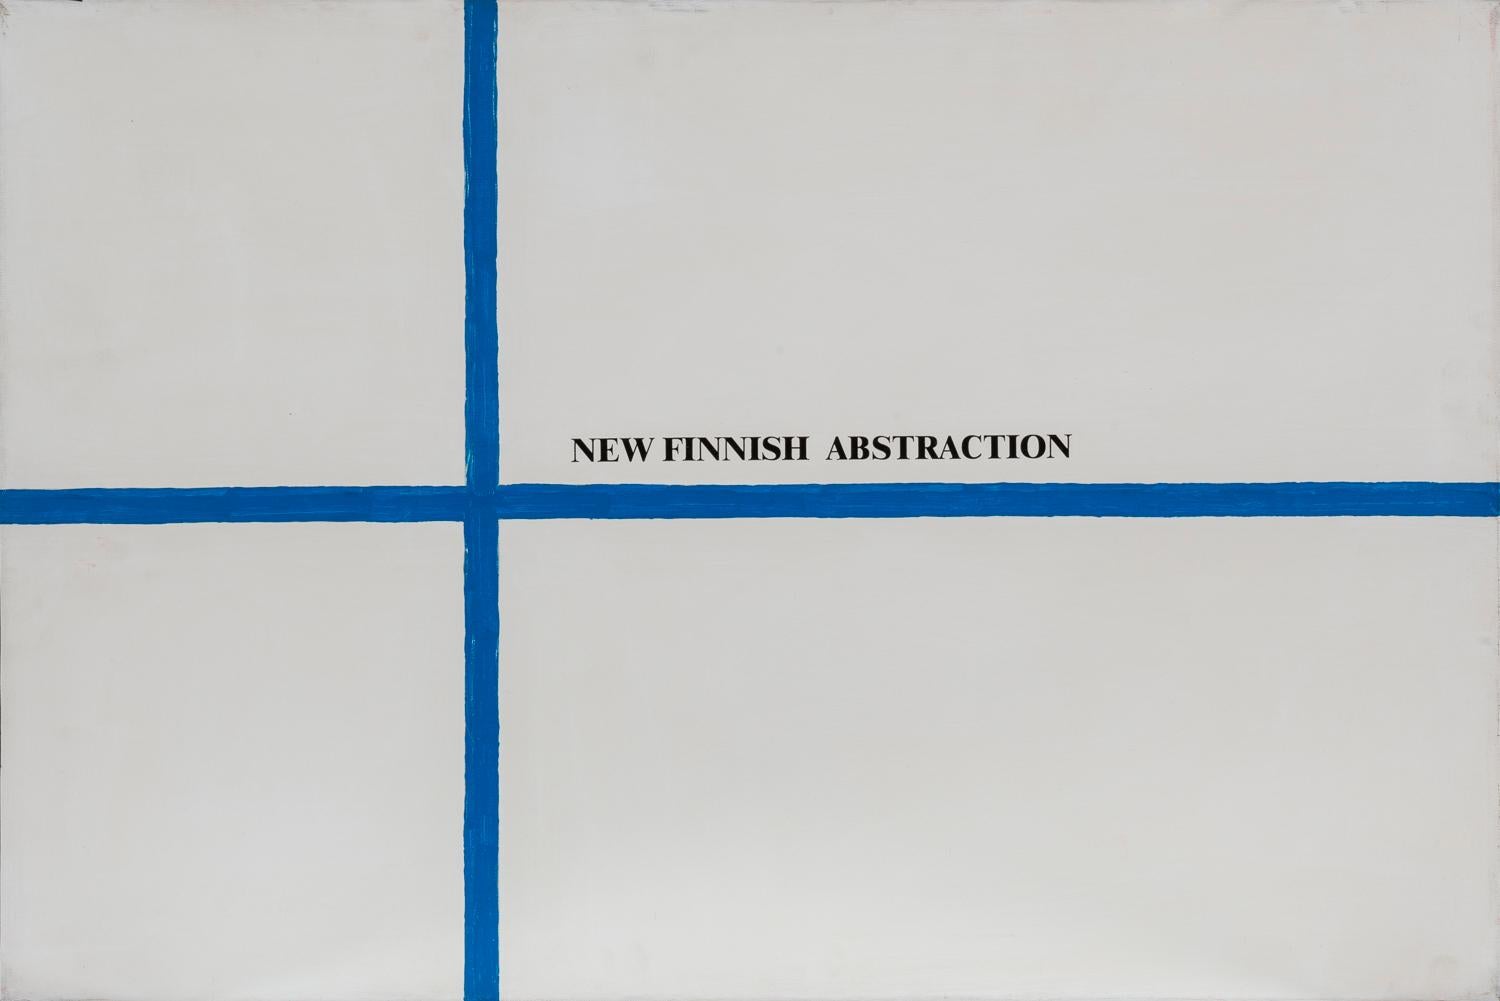 Neue finnische Abstraktion, 1972-2002, Acryl auf Leinwand, Flaggen, Visuelle Poesie – Painting von Sarenco